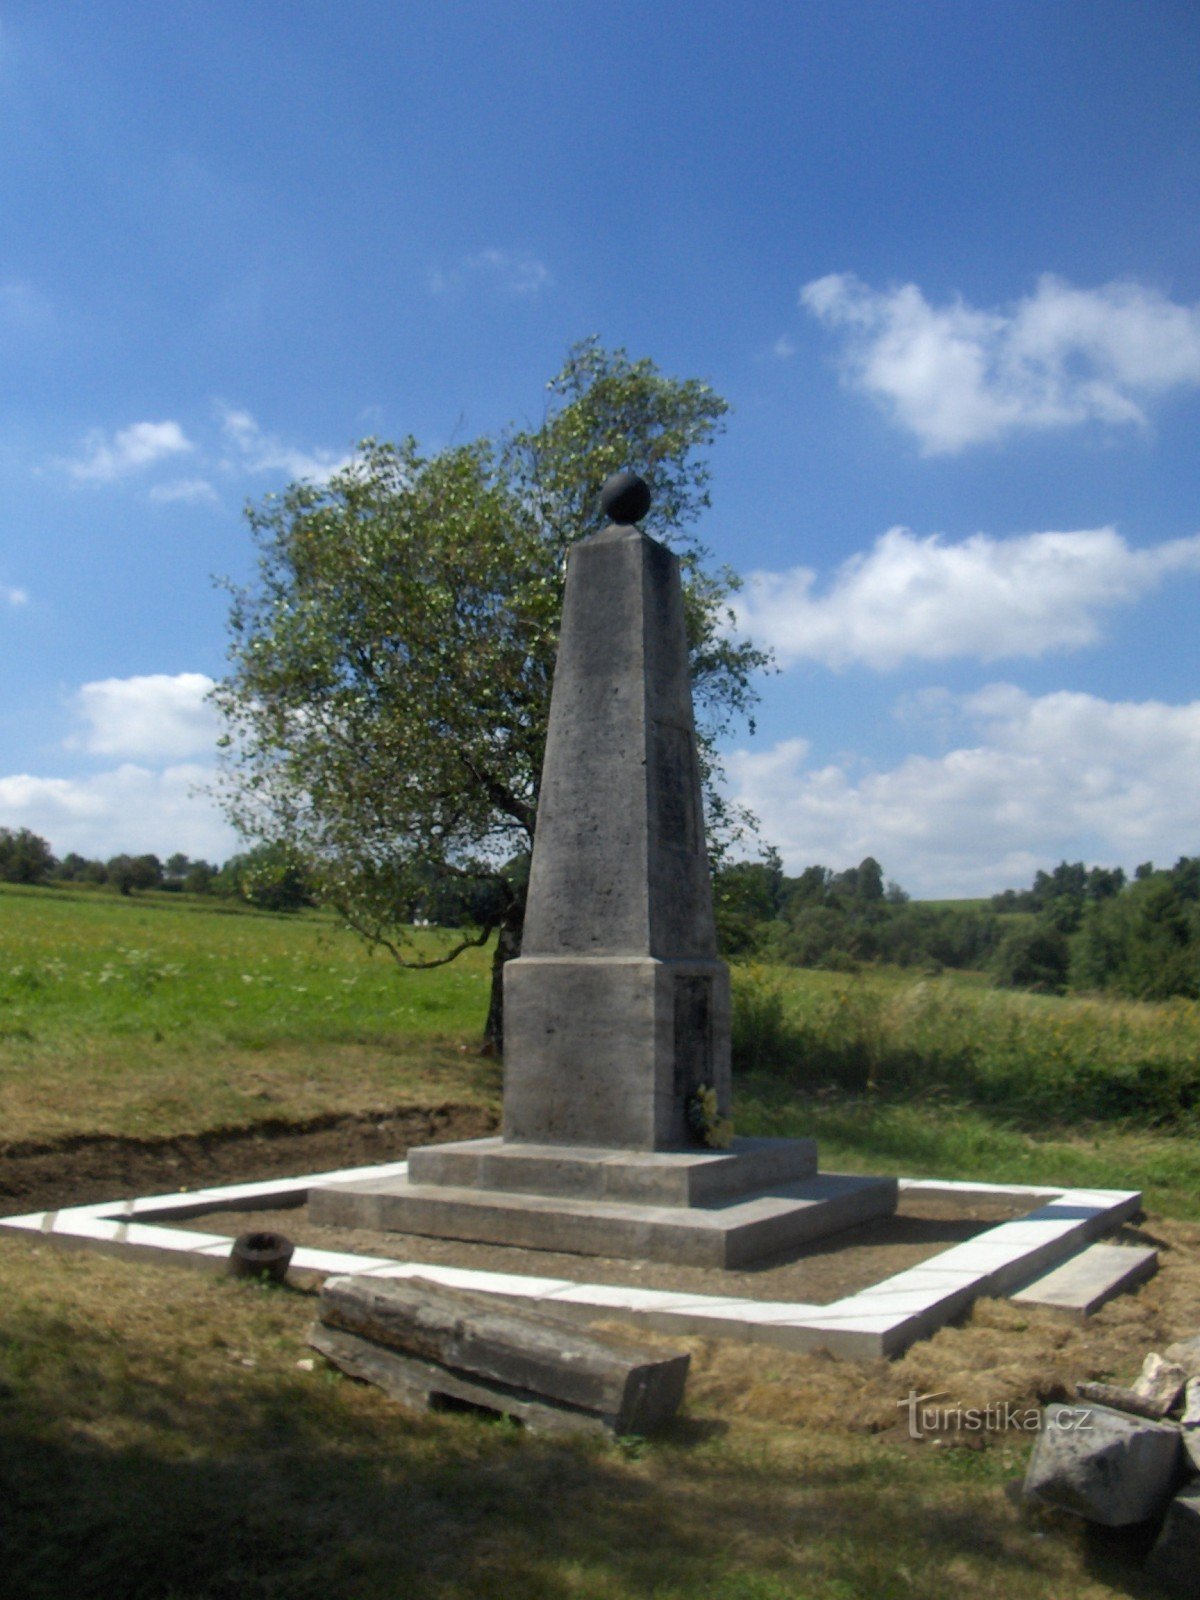 o monumento ao General Kleist